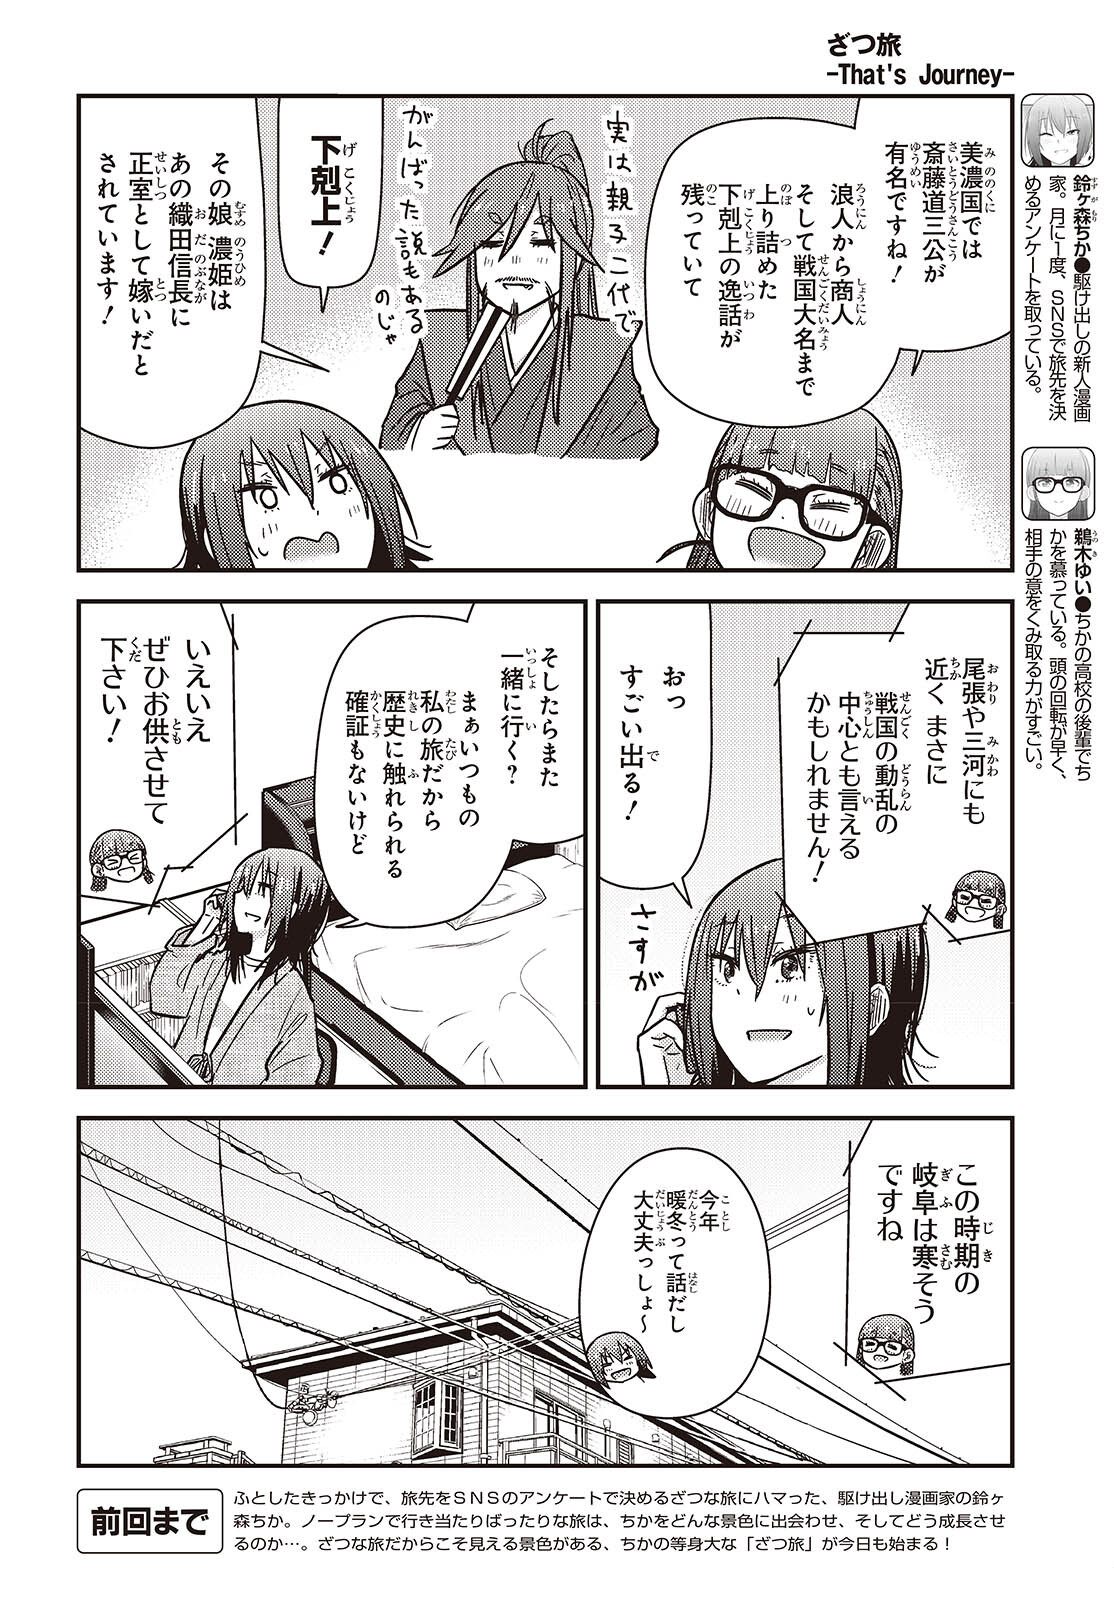 ざつ旅-That’s Journey- 第36話 - Page 2